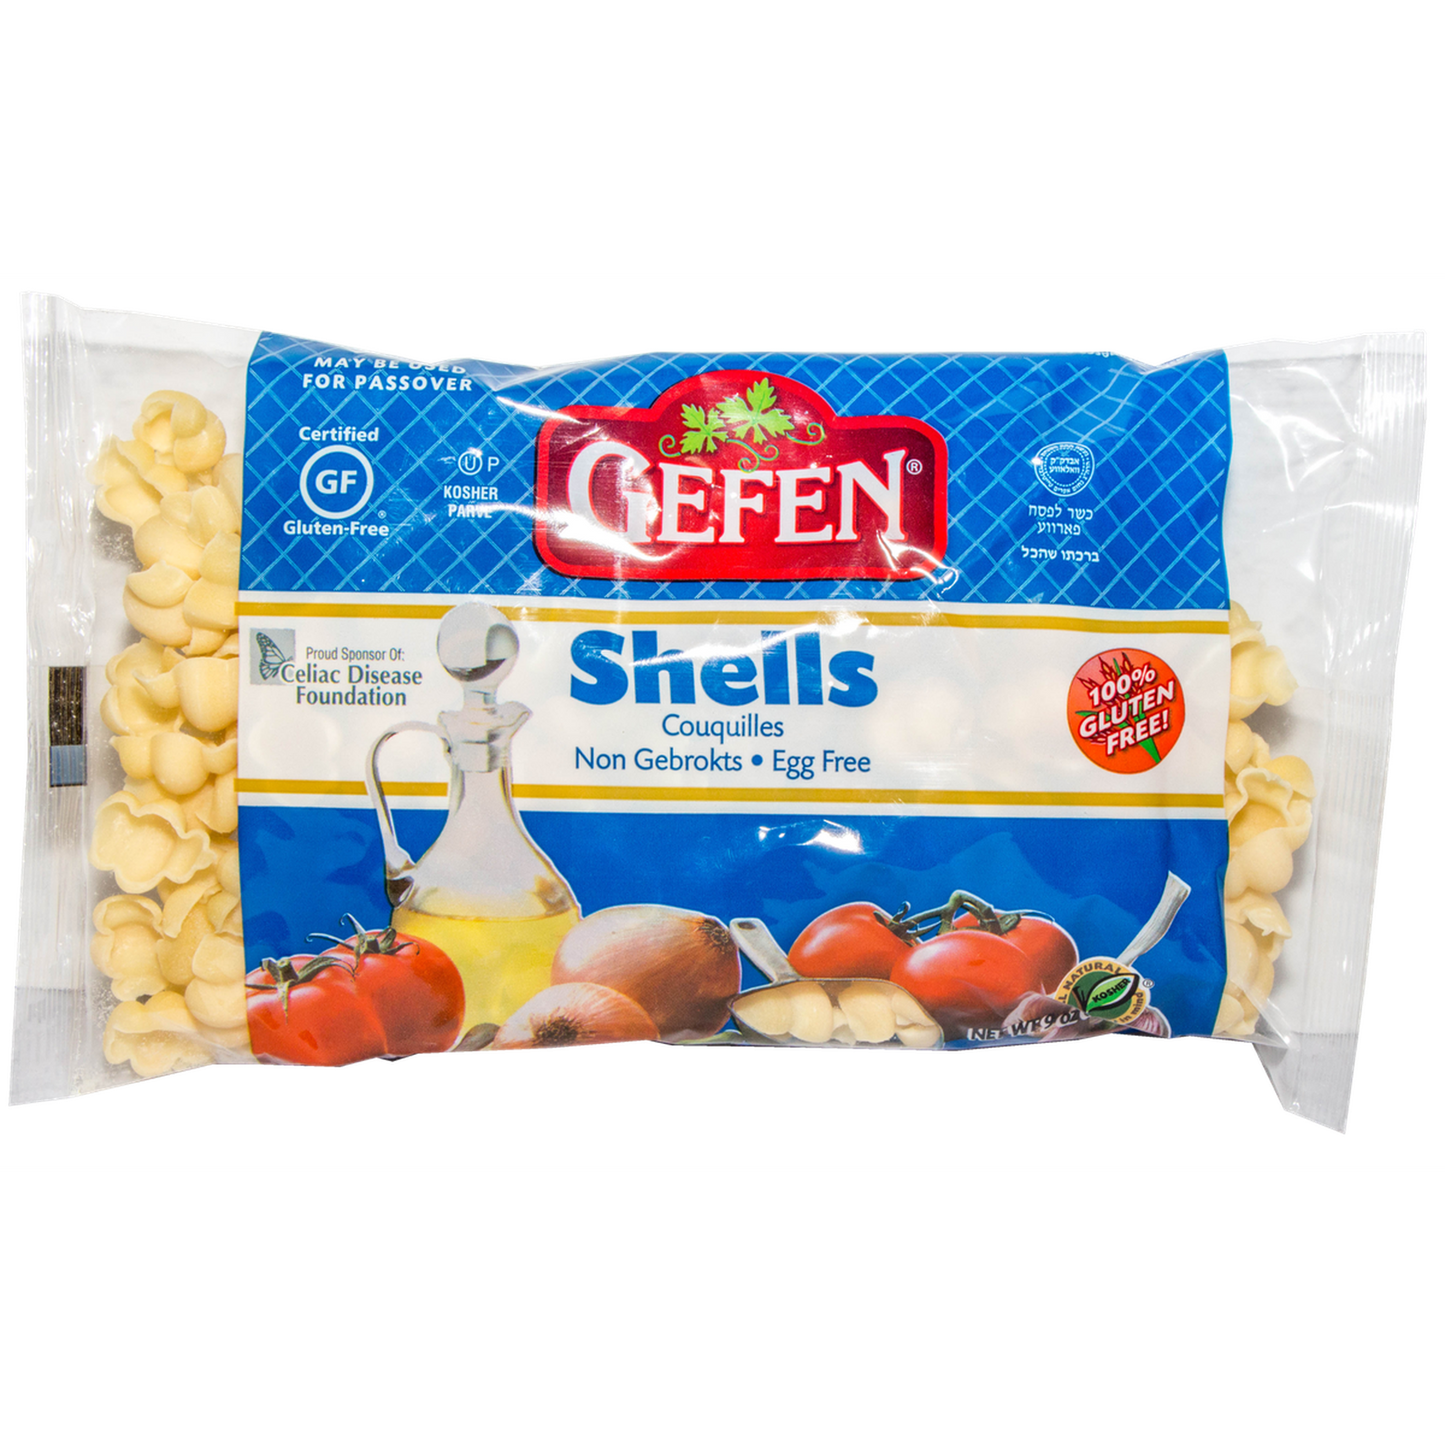 Pasta Gefen: Shells